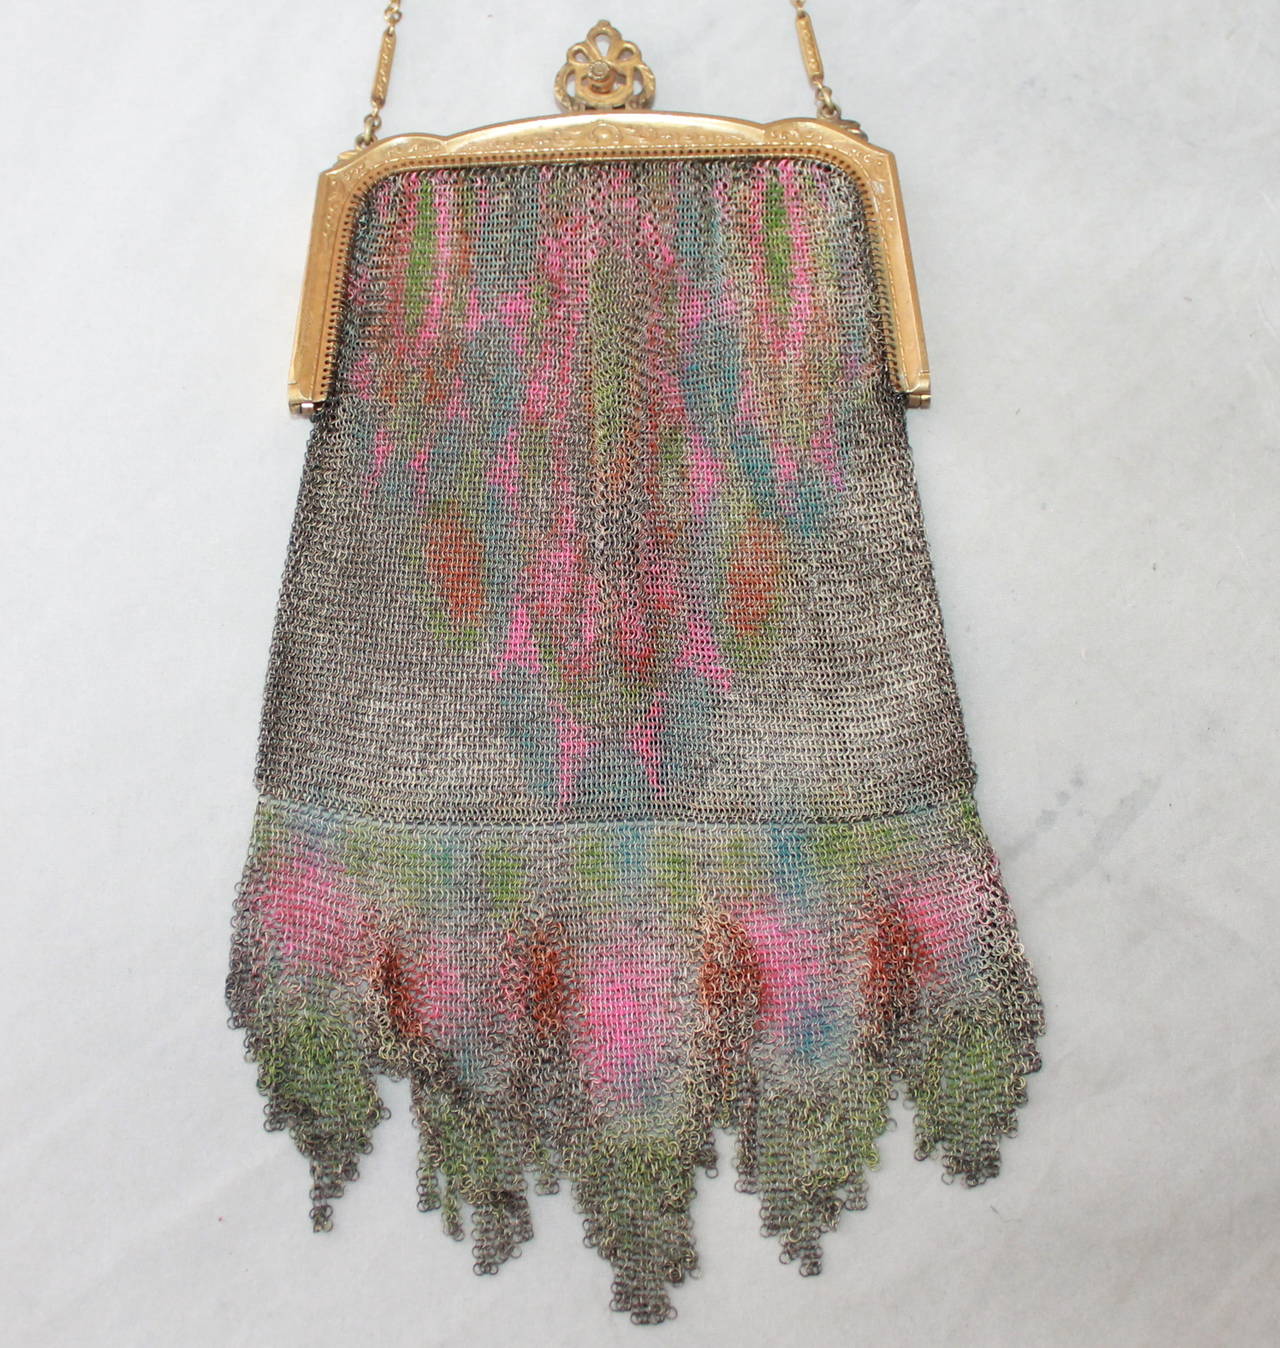 Edwardian Vintage Whiting & Davis Dresden Multi-Color Mesh Bag. Diese Tasche ist in einem ausgezeichneten Vintage-Zustand und hat eine Fransenoptik am Boden. Die Hardware weist aufgrund ihres Alters bereits kleine dunkle Flecken auf. 

Höhe -